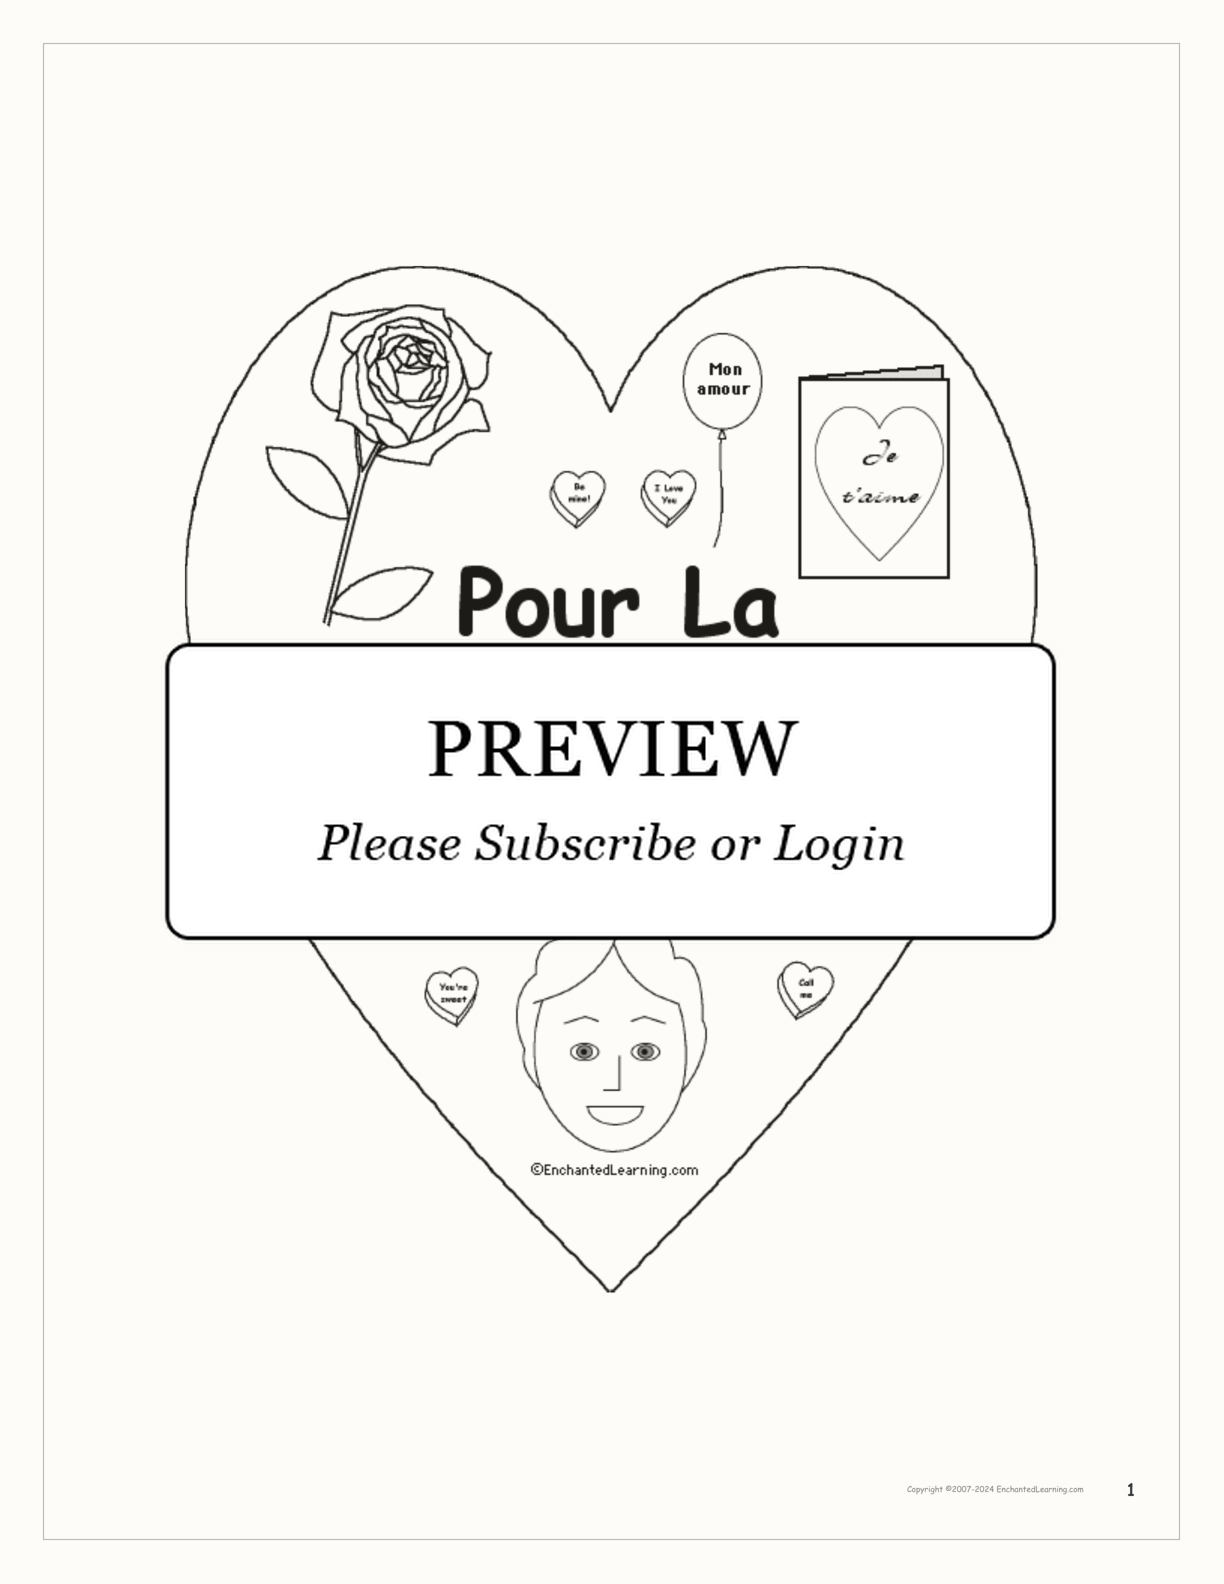 Pour la Saint-Valentin interactive worksheet page 1